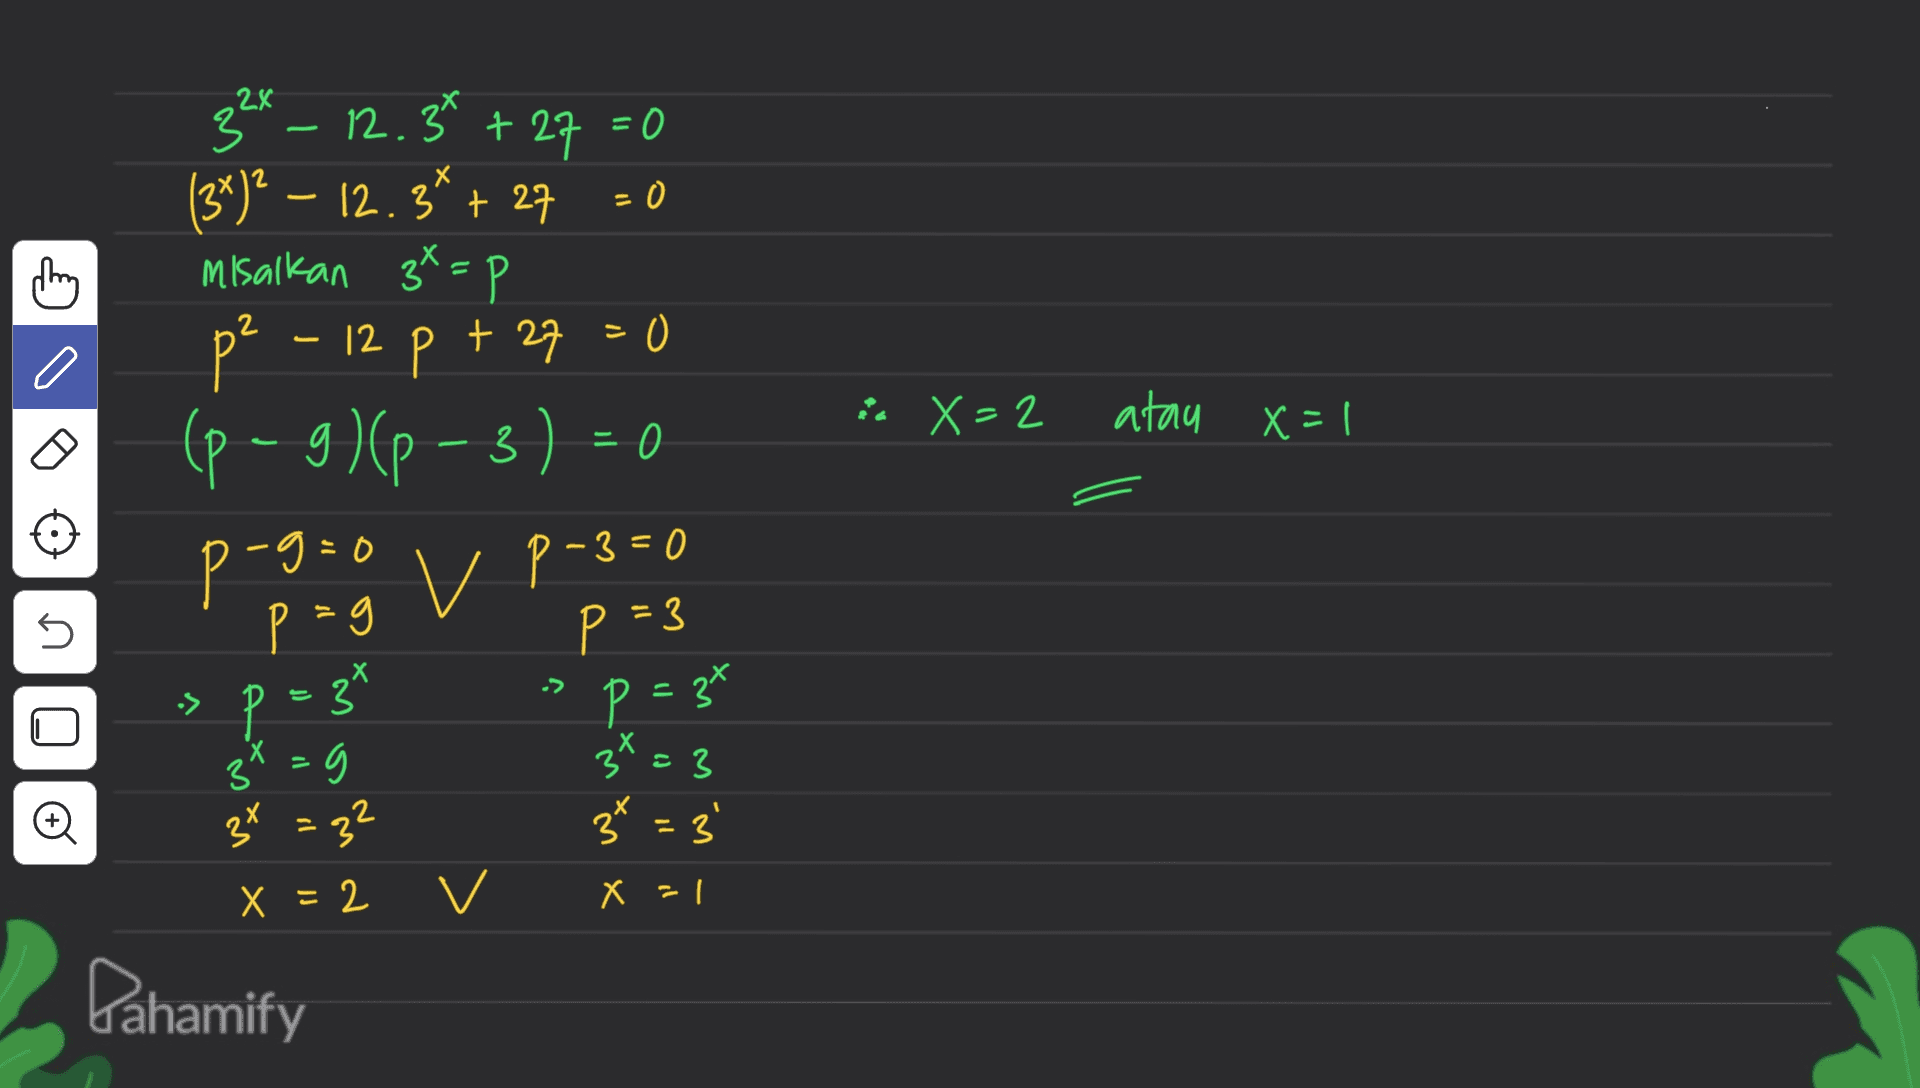 ਅ 2 - 12 X=2 atau X=1 3 32x – * 12.34 + 27 = 0 (3*)? – 12.3* + 27 = 0 misalkan 3*=p p 12 p + 27 + 27 =0 (p-9)(P-3) = 0 proto v P-3=0 P p=3 p=3" 3x = 3 3x = 32 37 = 3' = 9 s -> P = 37 3 3x =g 3 o X =2 v X = 1 Dahamify 